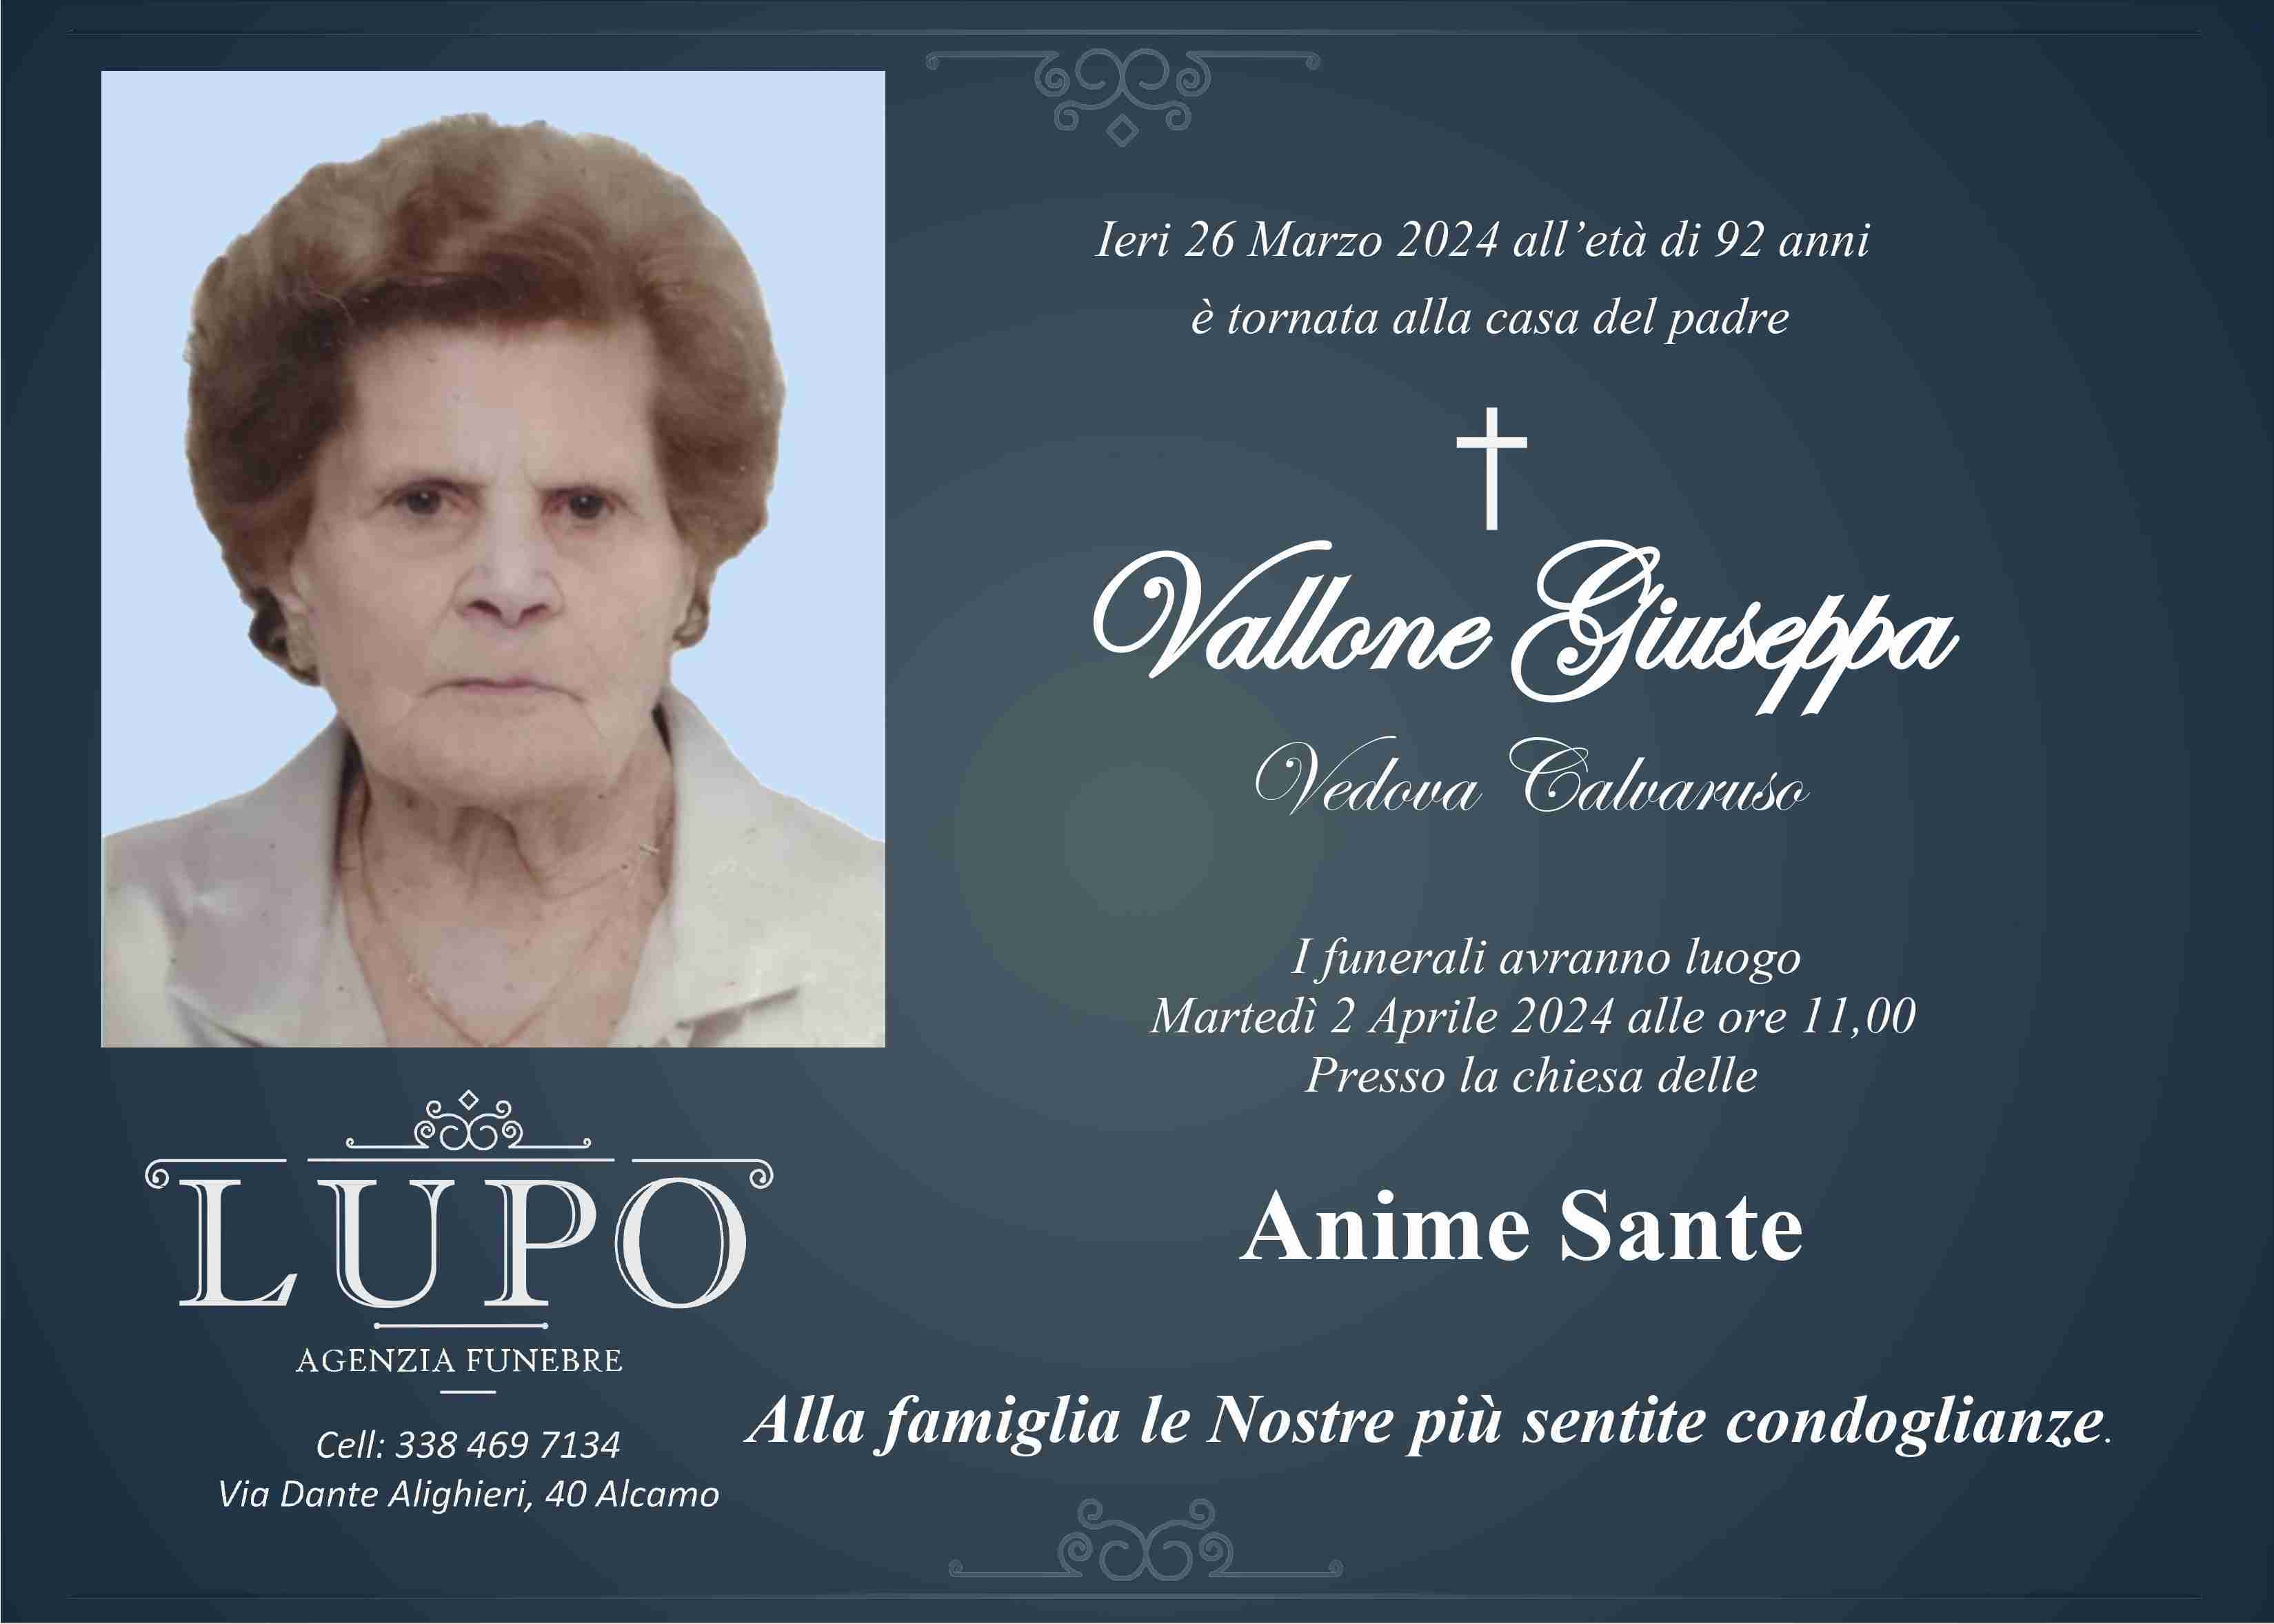 Giuseppa Vallone